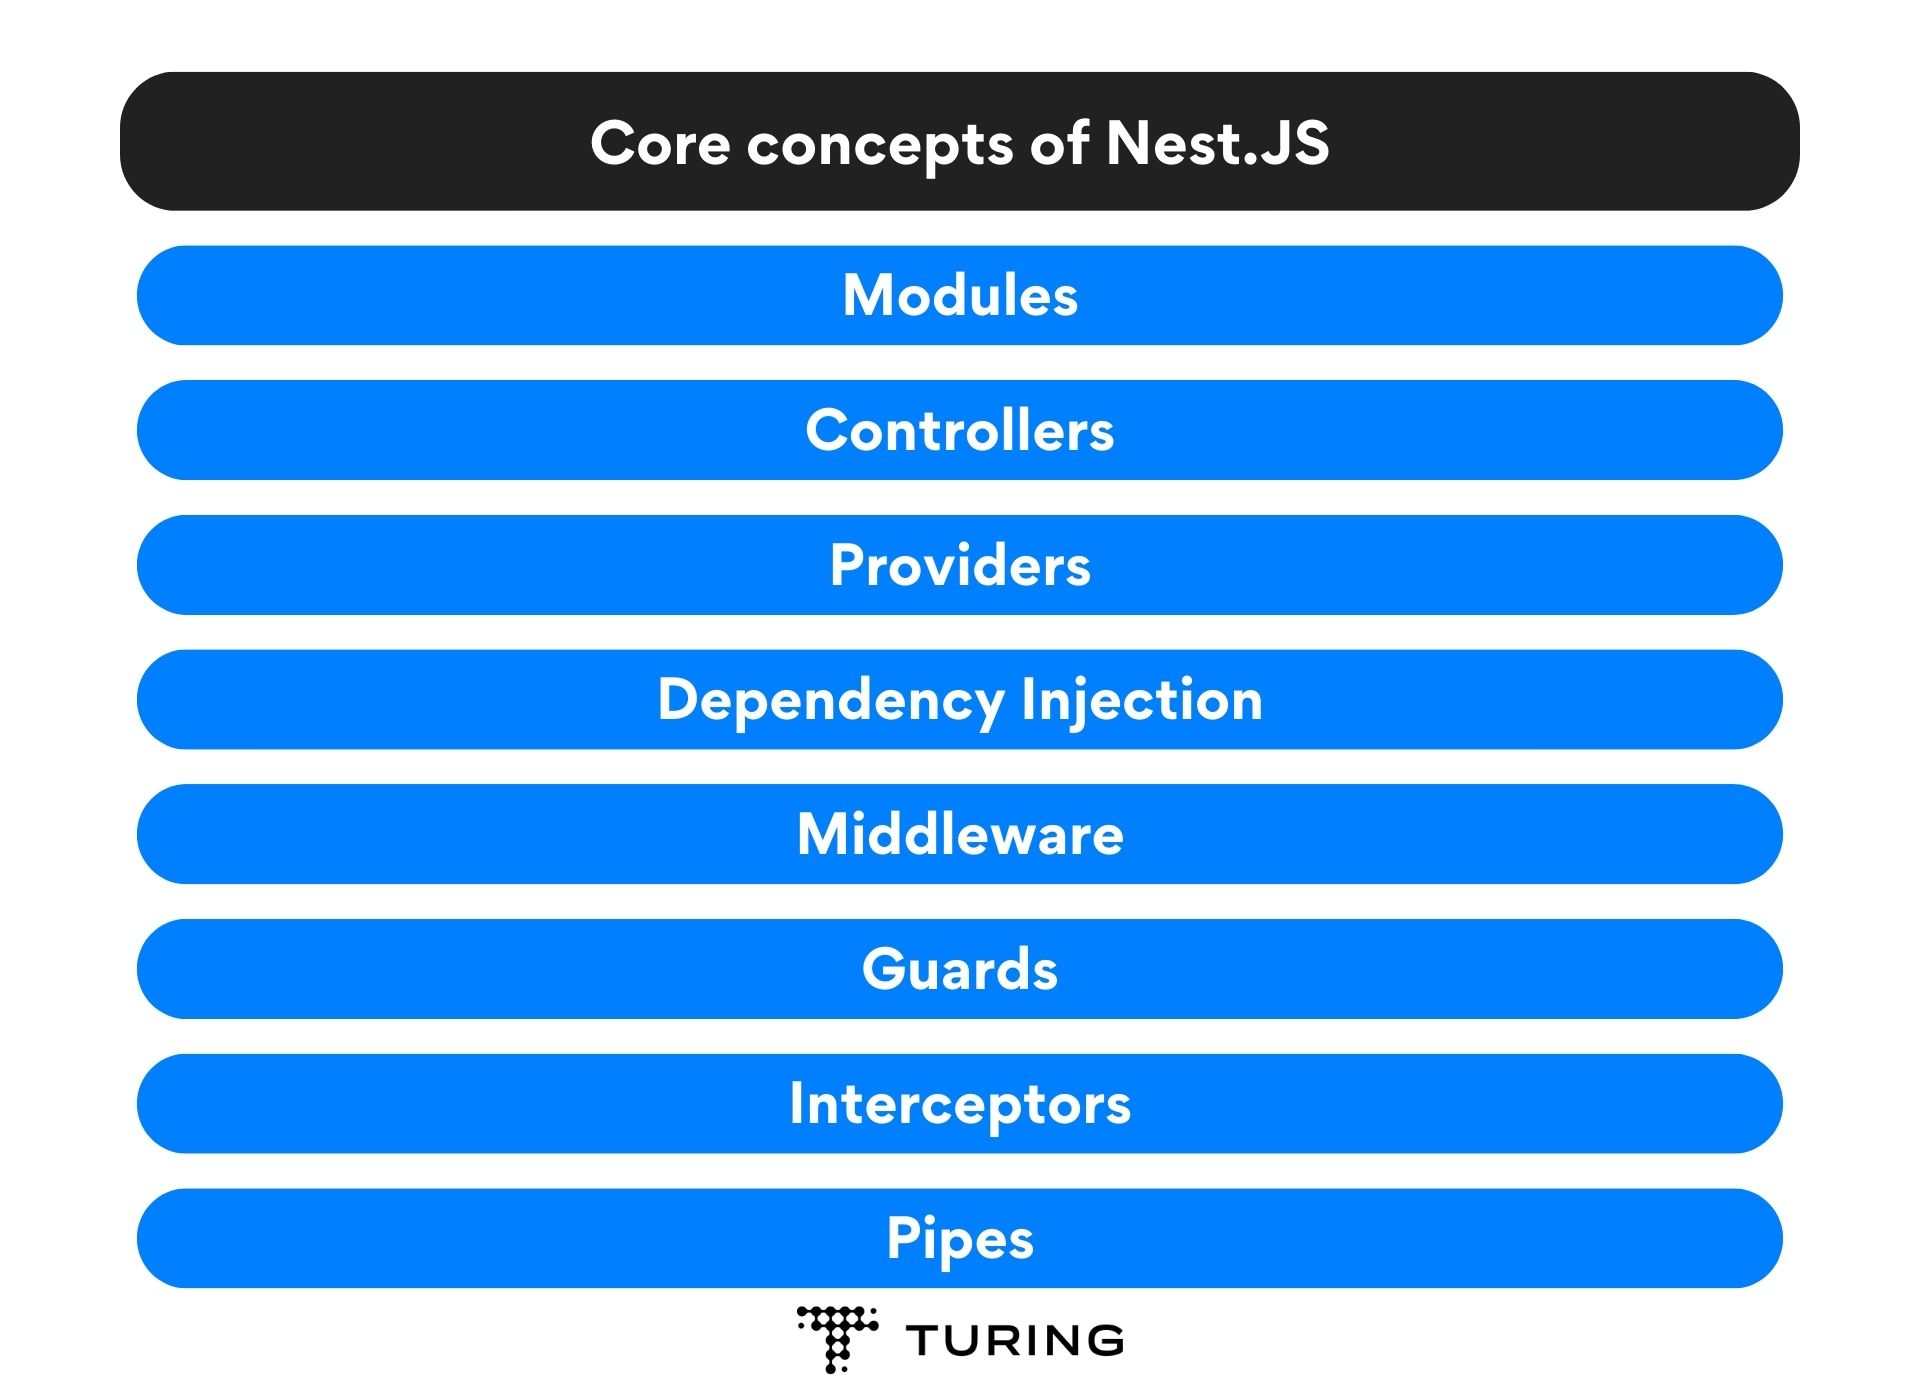 Core concepts of Nest.JS